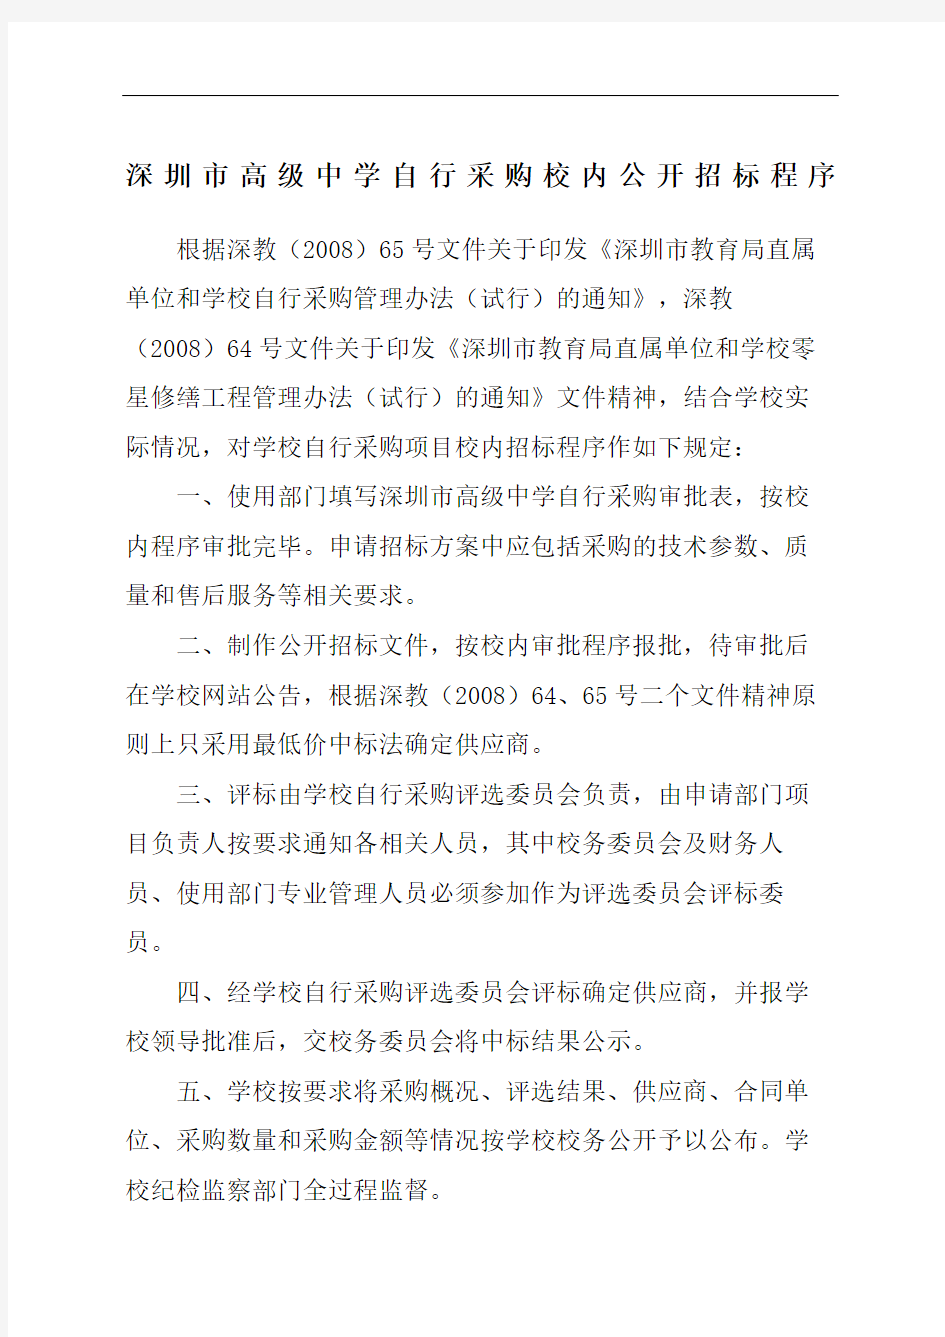 深圳市高级中学自行采购校内公开招标程序